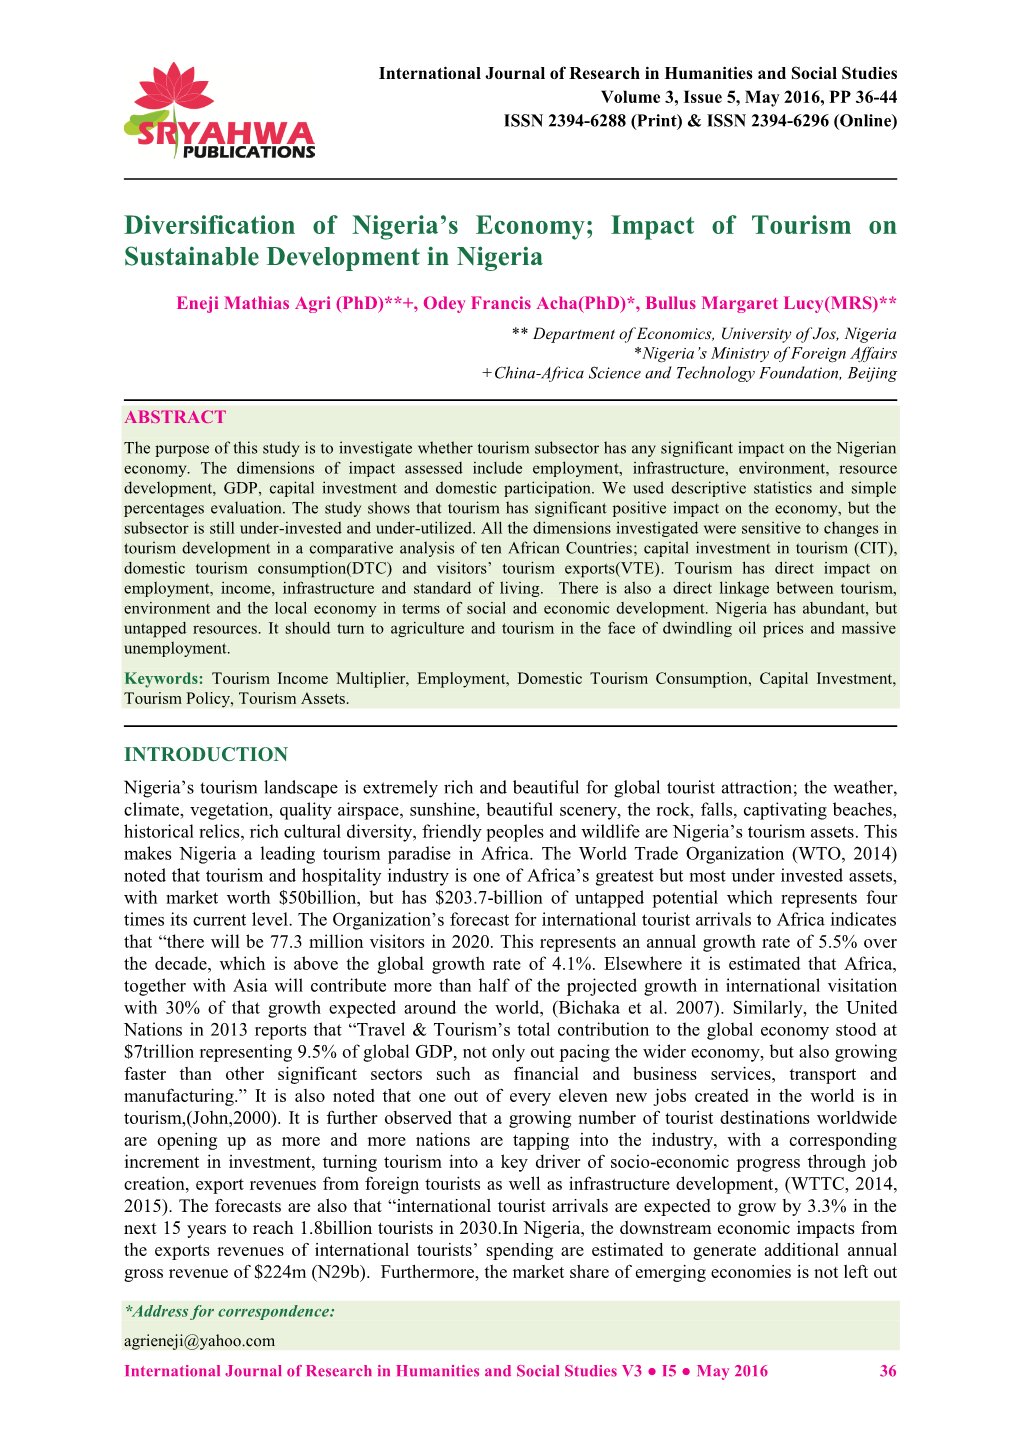 Diversification of Nigeria's Economy